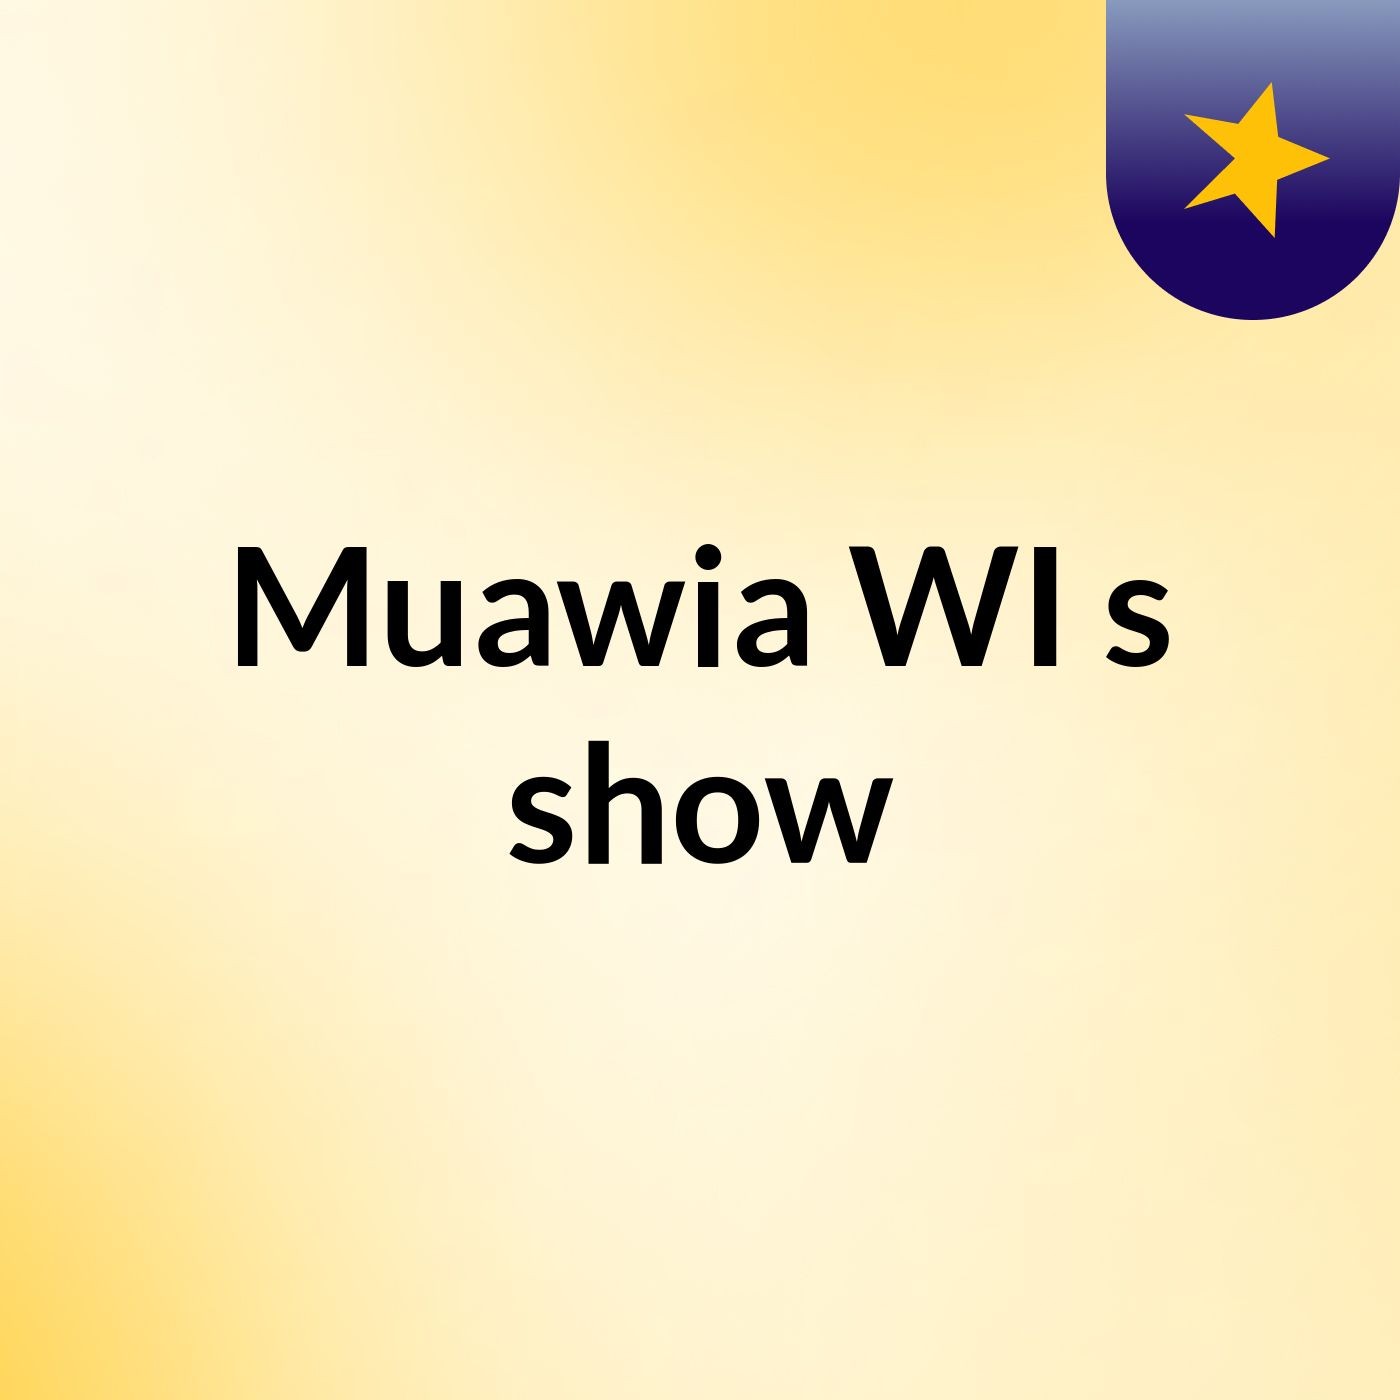 Muawia WI's show